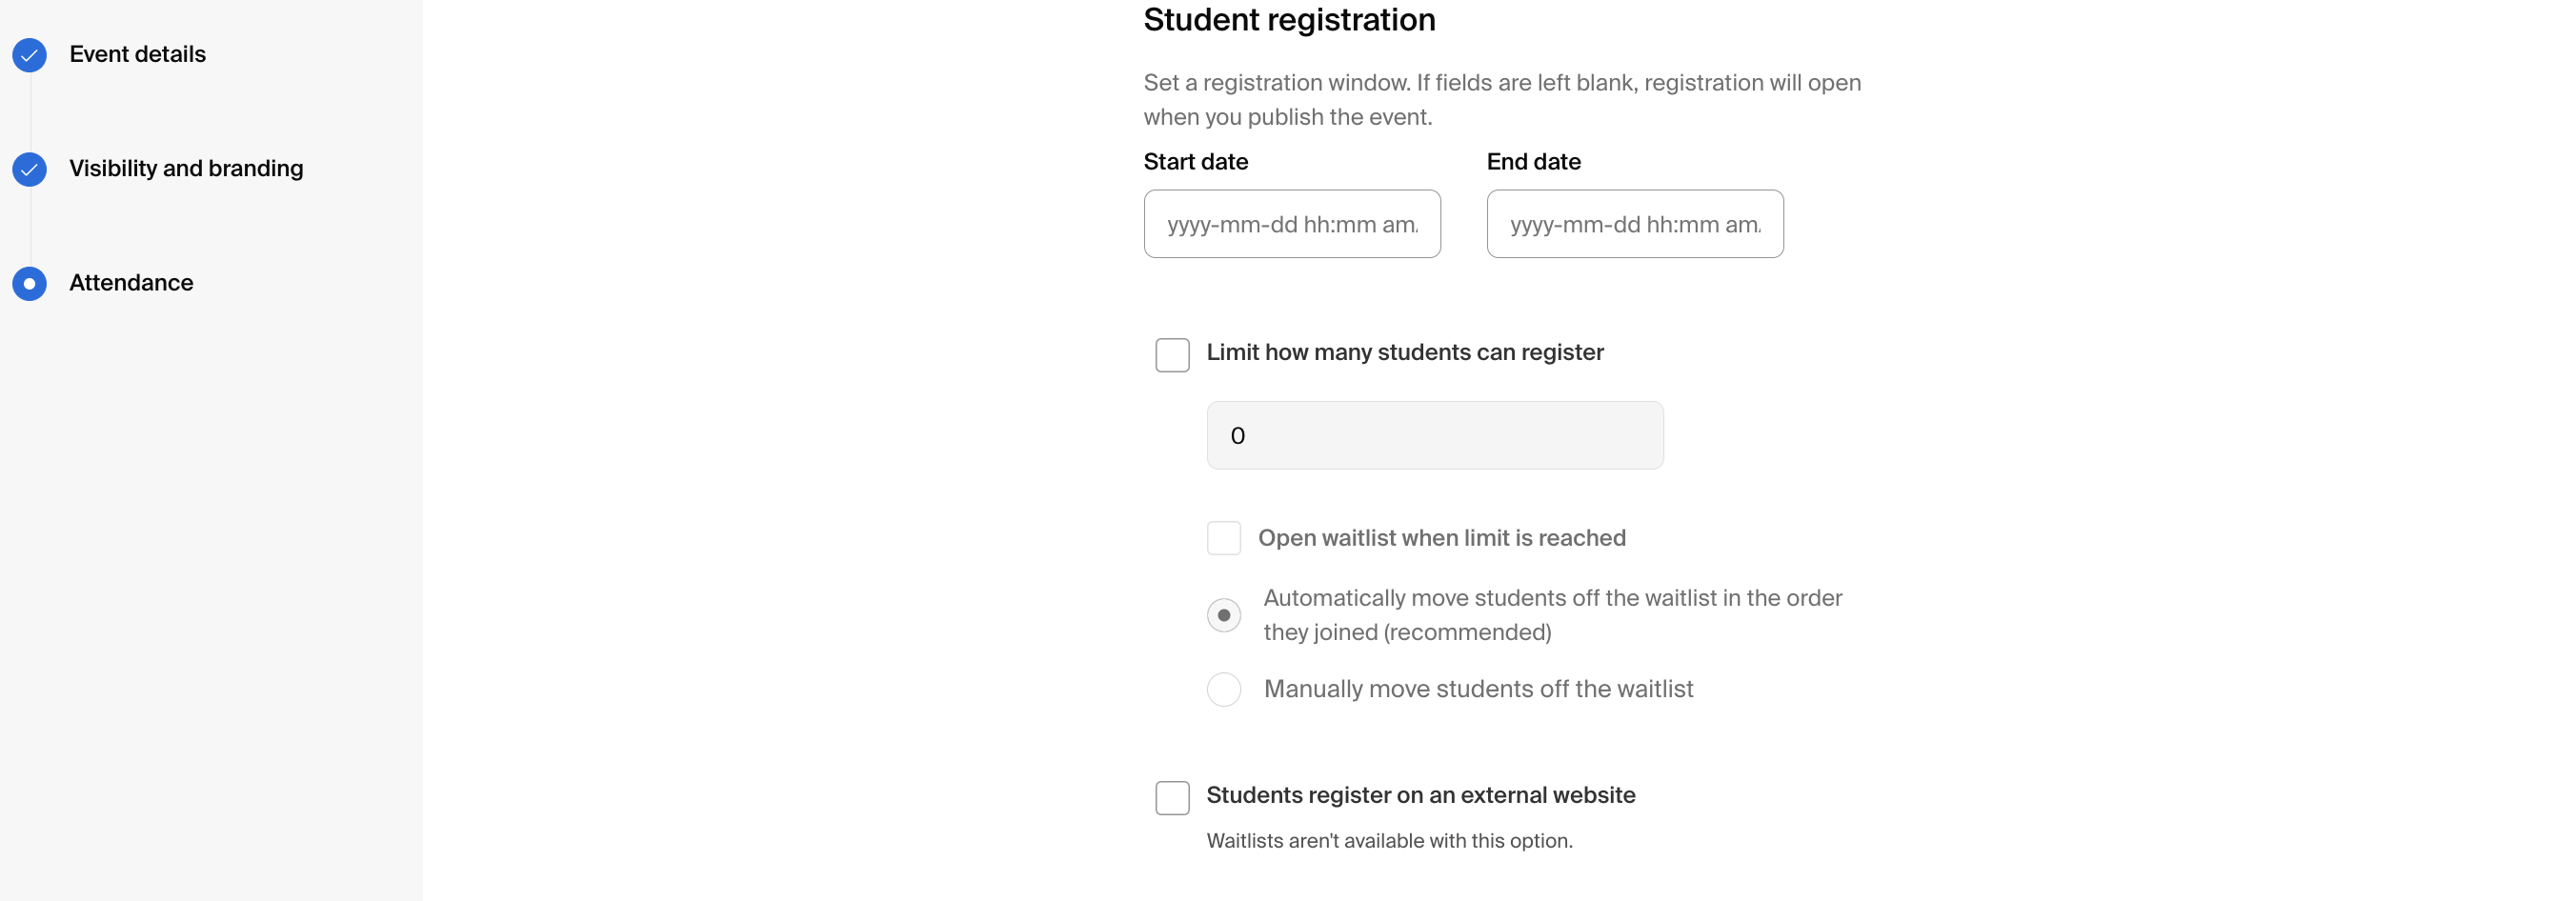 Student registration, waitlist options, and external website registration.png